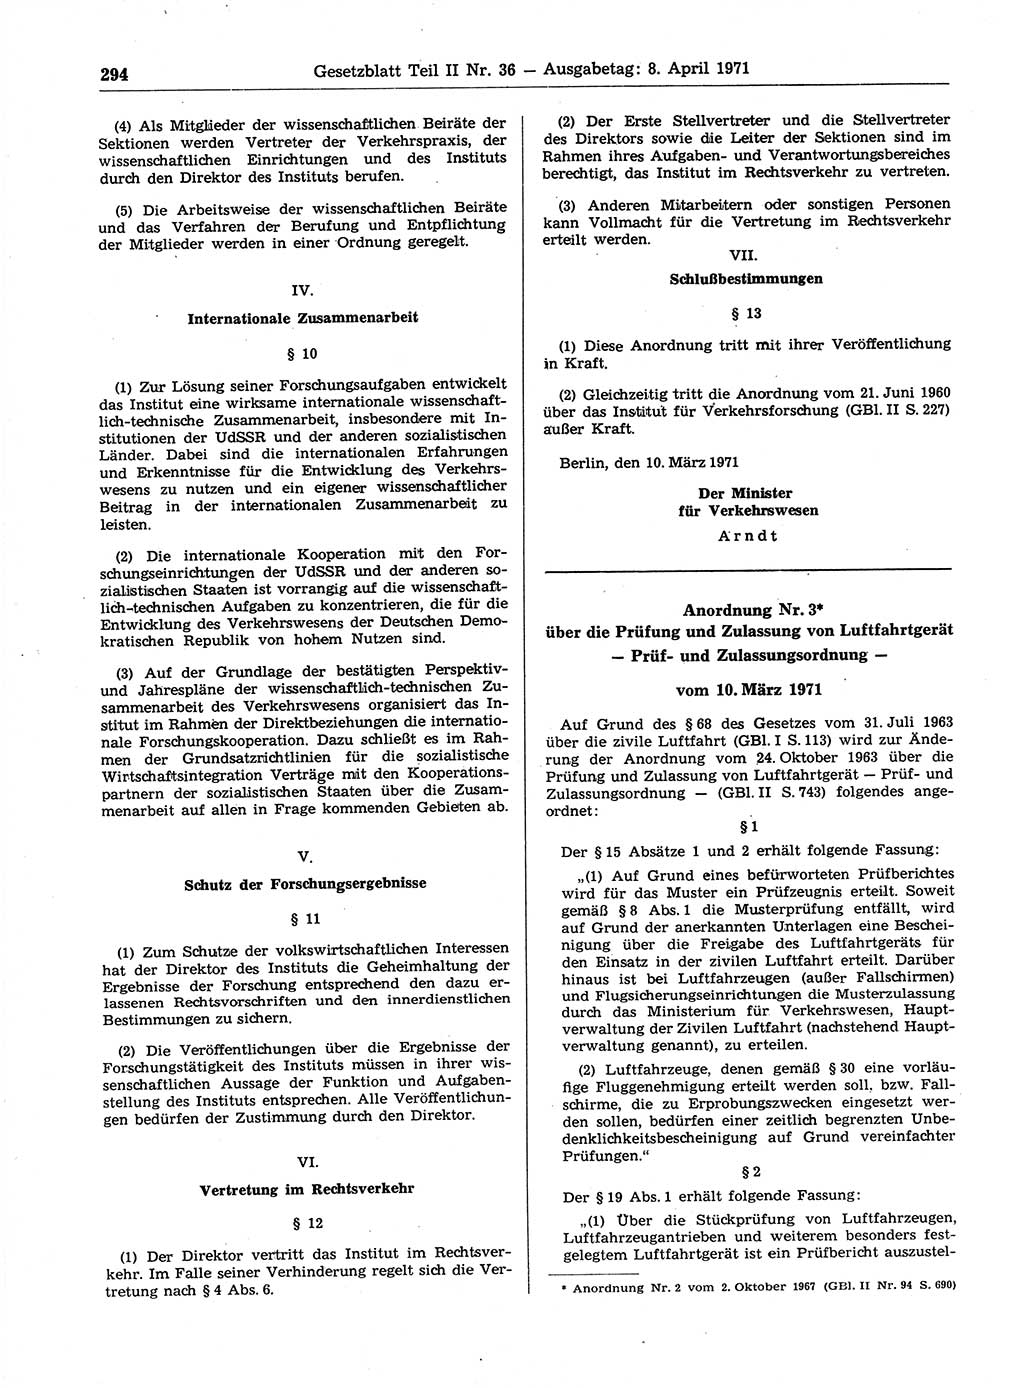 Gesetzblatt (GBl.) der Deutschen Demokratischen Republik (DDR) Teil ⅠⅠ 1971, Seite 294 (GBl. DDR ⅠⅠ 1971, S. 294)